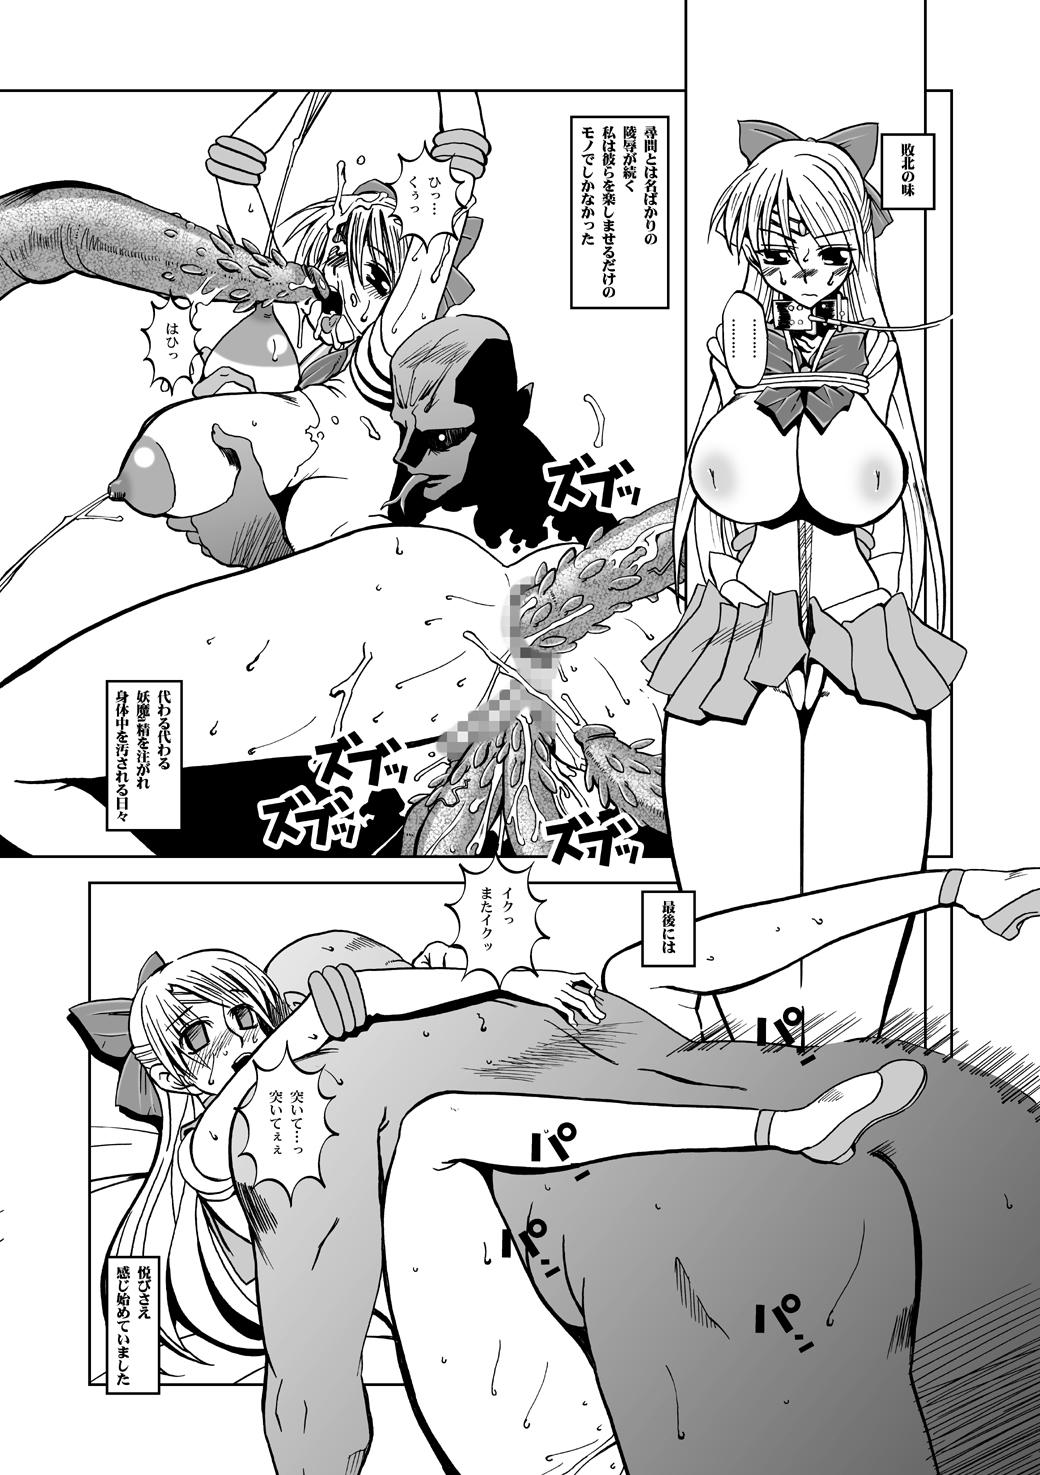 Gang Bang Selection:M - Sailor moon Insane Porn - Page 7